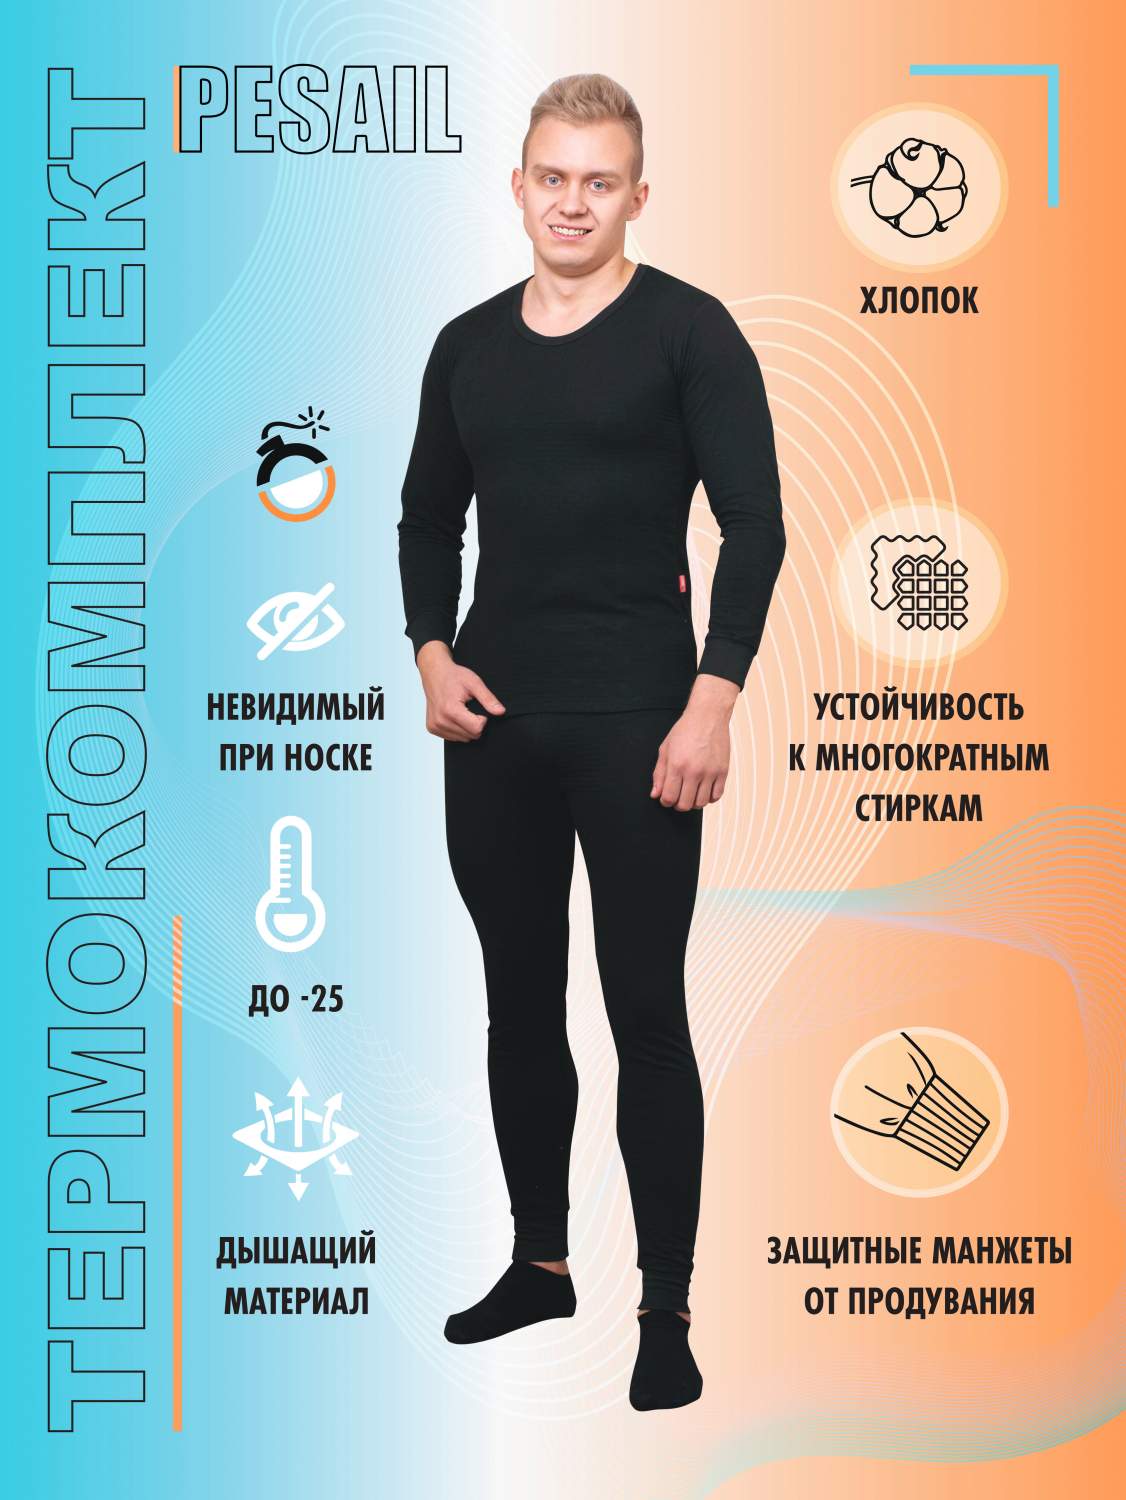 Термобелье мужское Pesail – купить термобелье мужское Pesail в Москве, ценына Мегамаркет